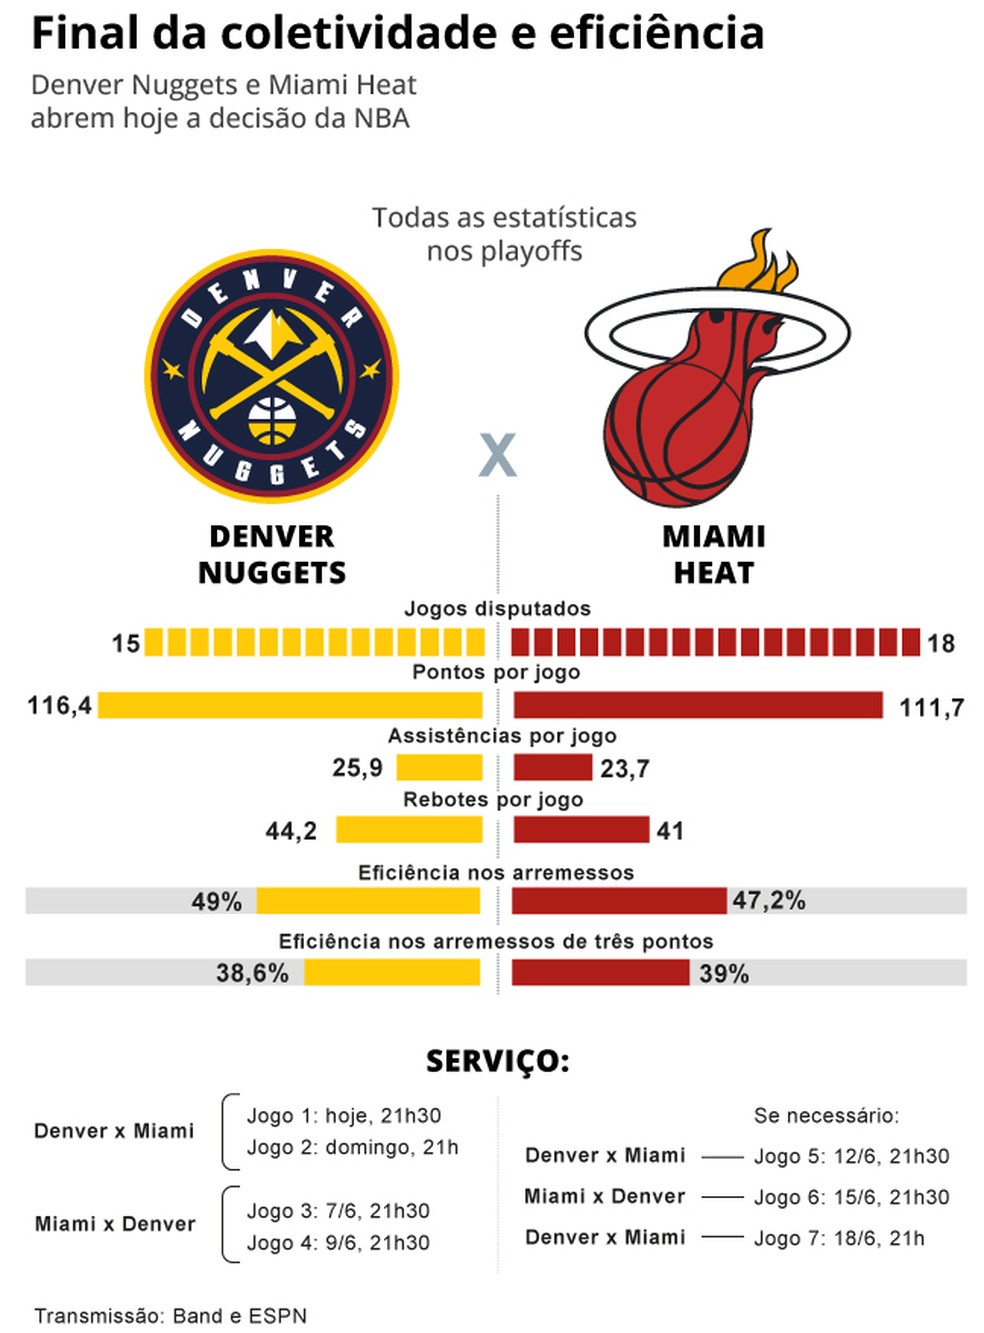 Denver Nuggets e Miami Heat se enfrentam na final da NBA — Foto: Editoria de Arte